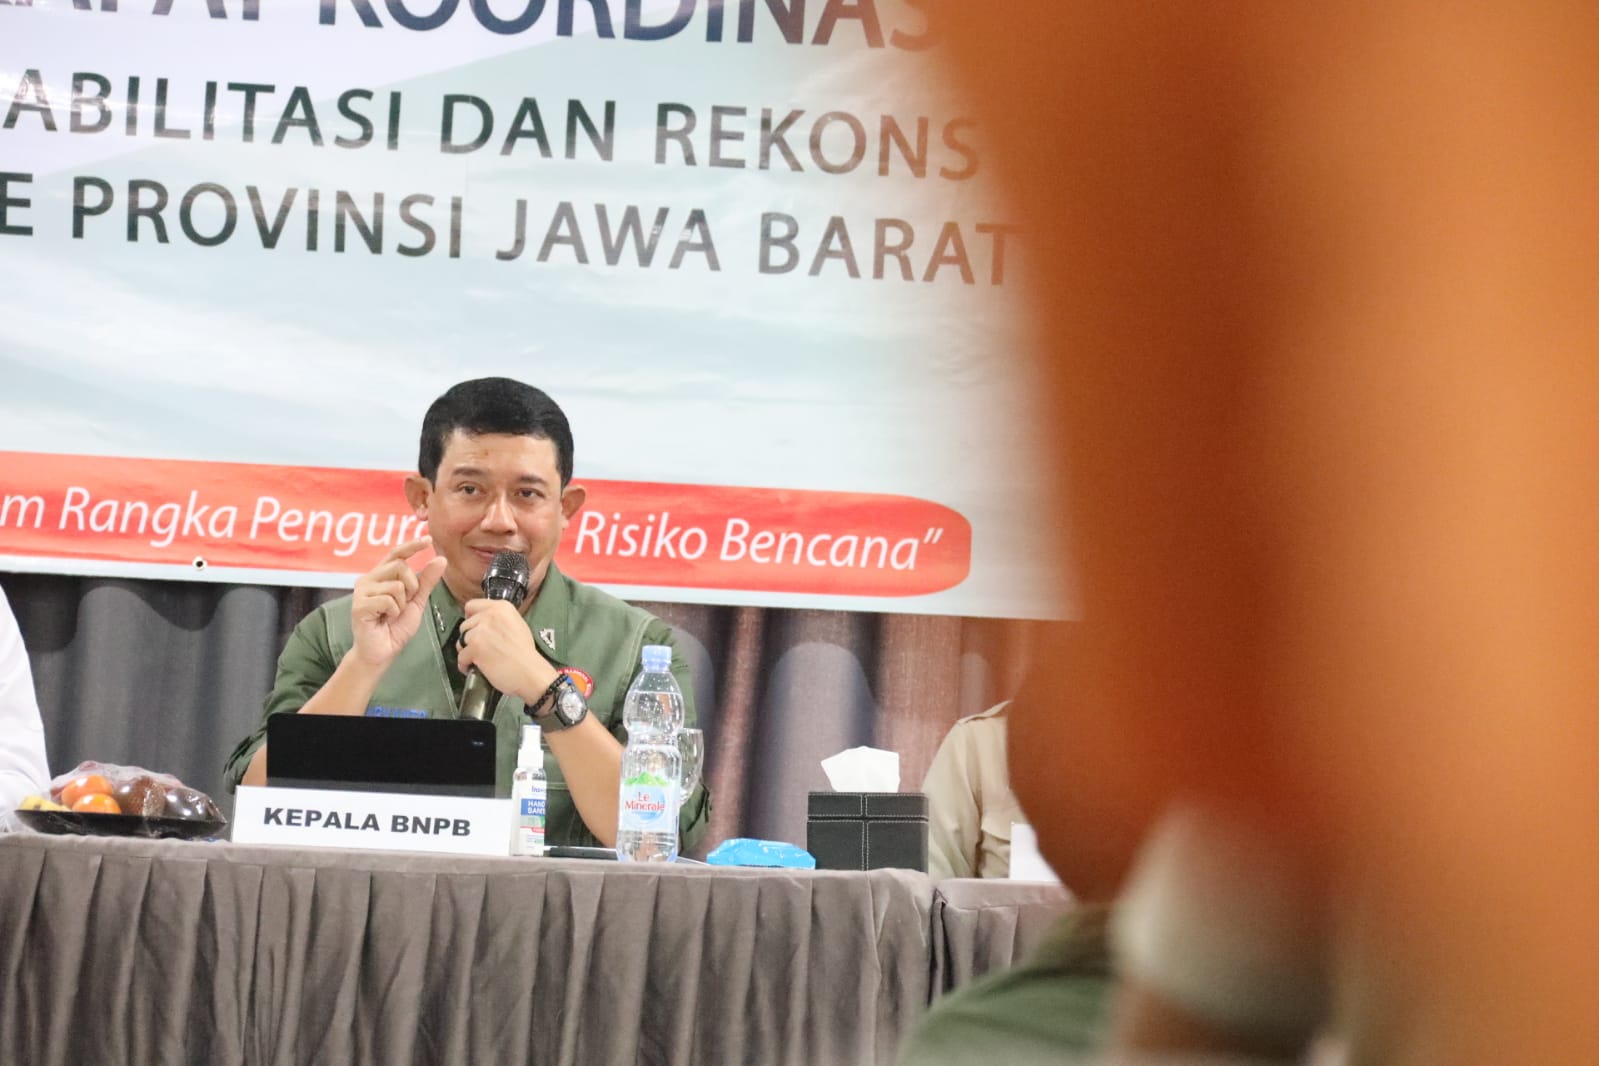 Kepala BNPB Letjen TNI Suharyanto (rompi hijau kemeja hijau) saat memimpin Rapat Koordinasi Penyelenggaraan Rehabilitasi dan Rekonstruksi wilayah Provinsi Jawa Barat di Kabupaten Subang, Jawa Barat, pada Kamis (24/8).